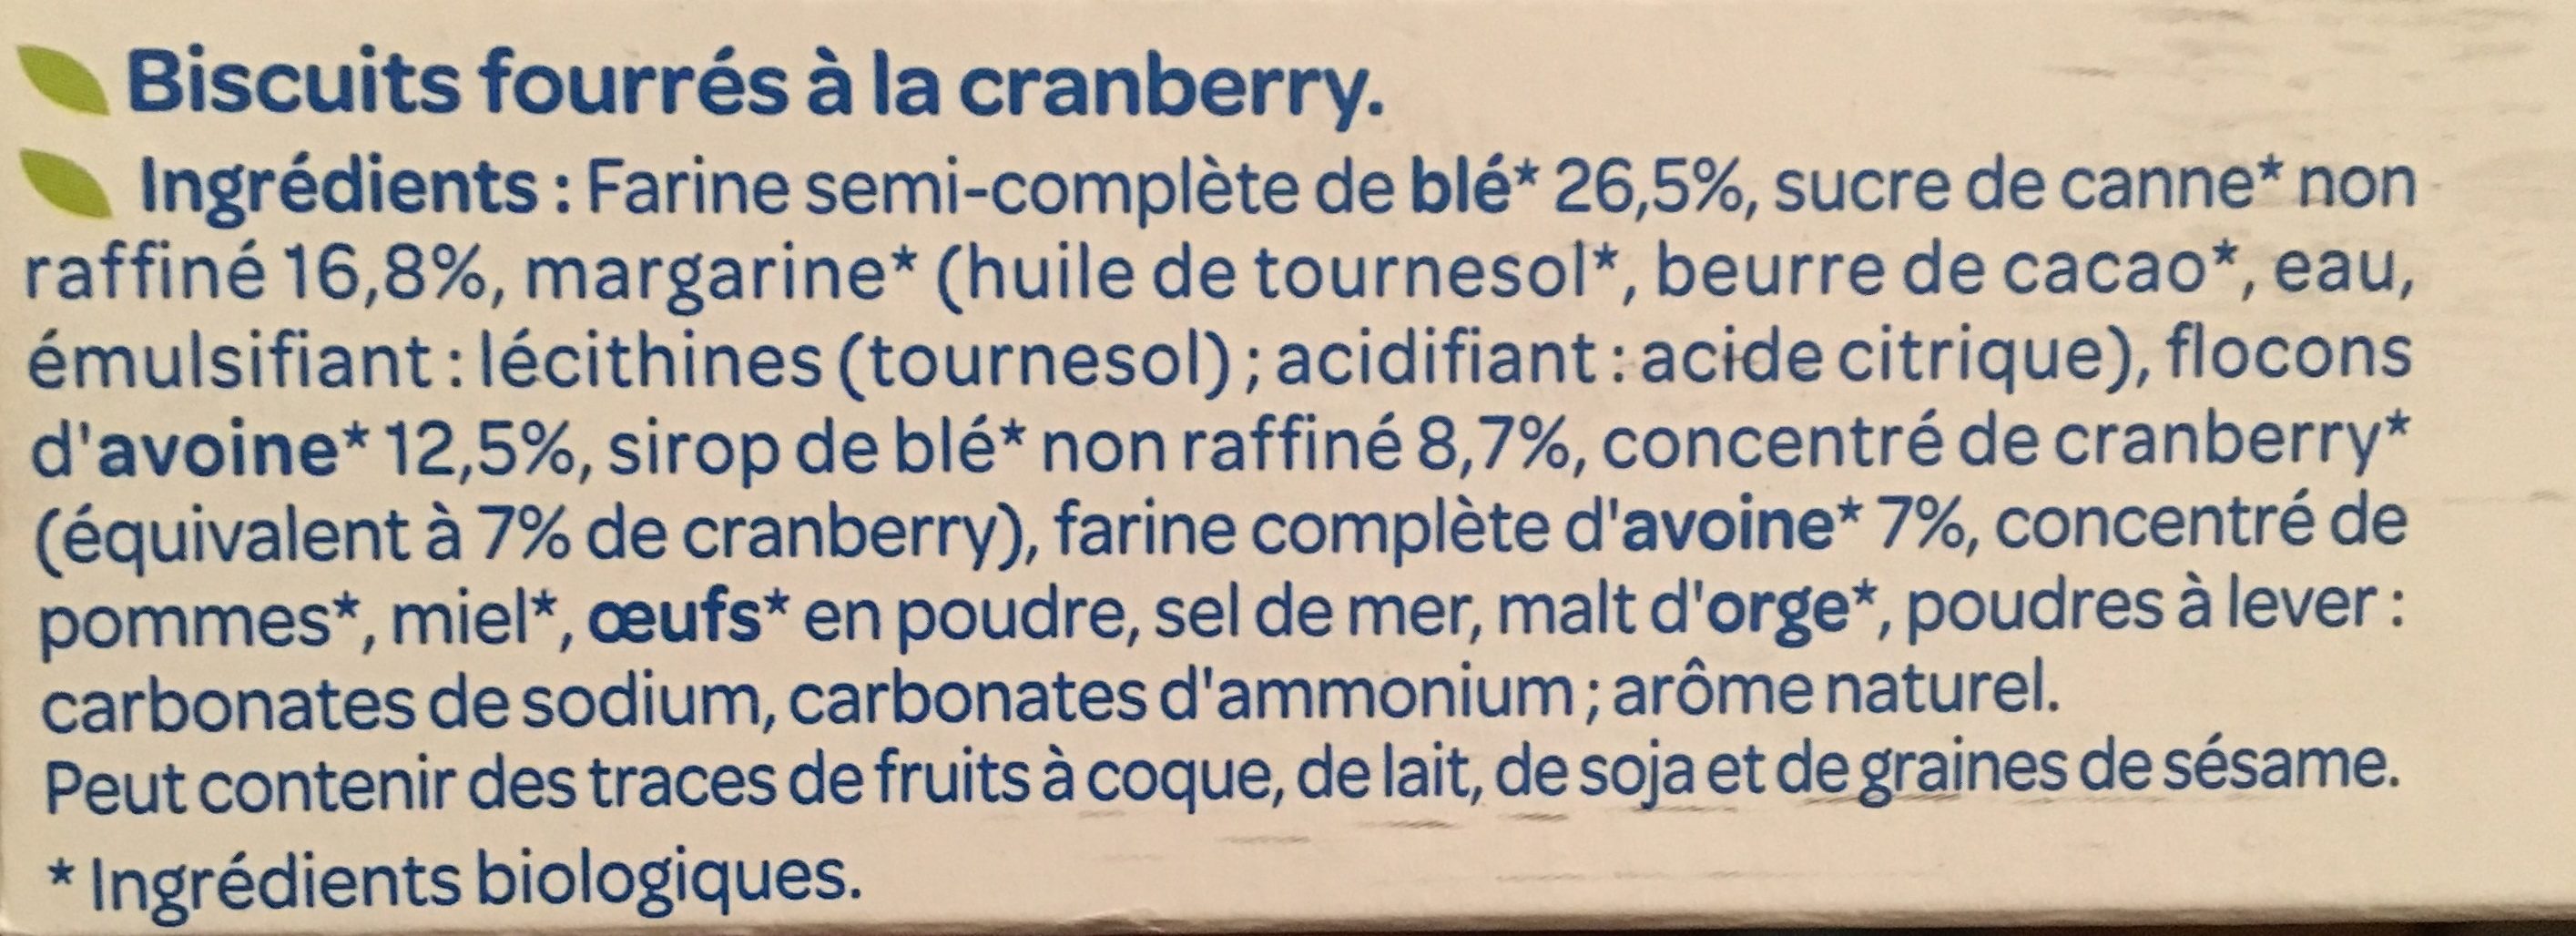 Fourrés Avoine Cranberry - Ingredients - fr